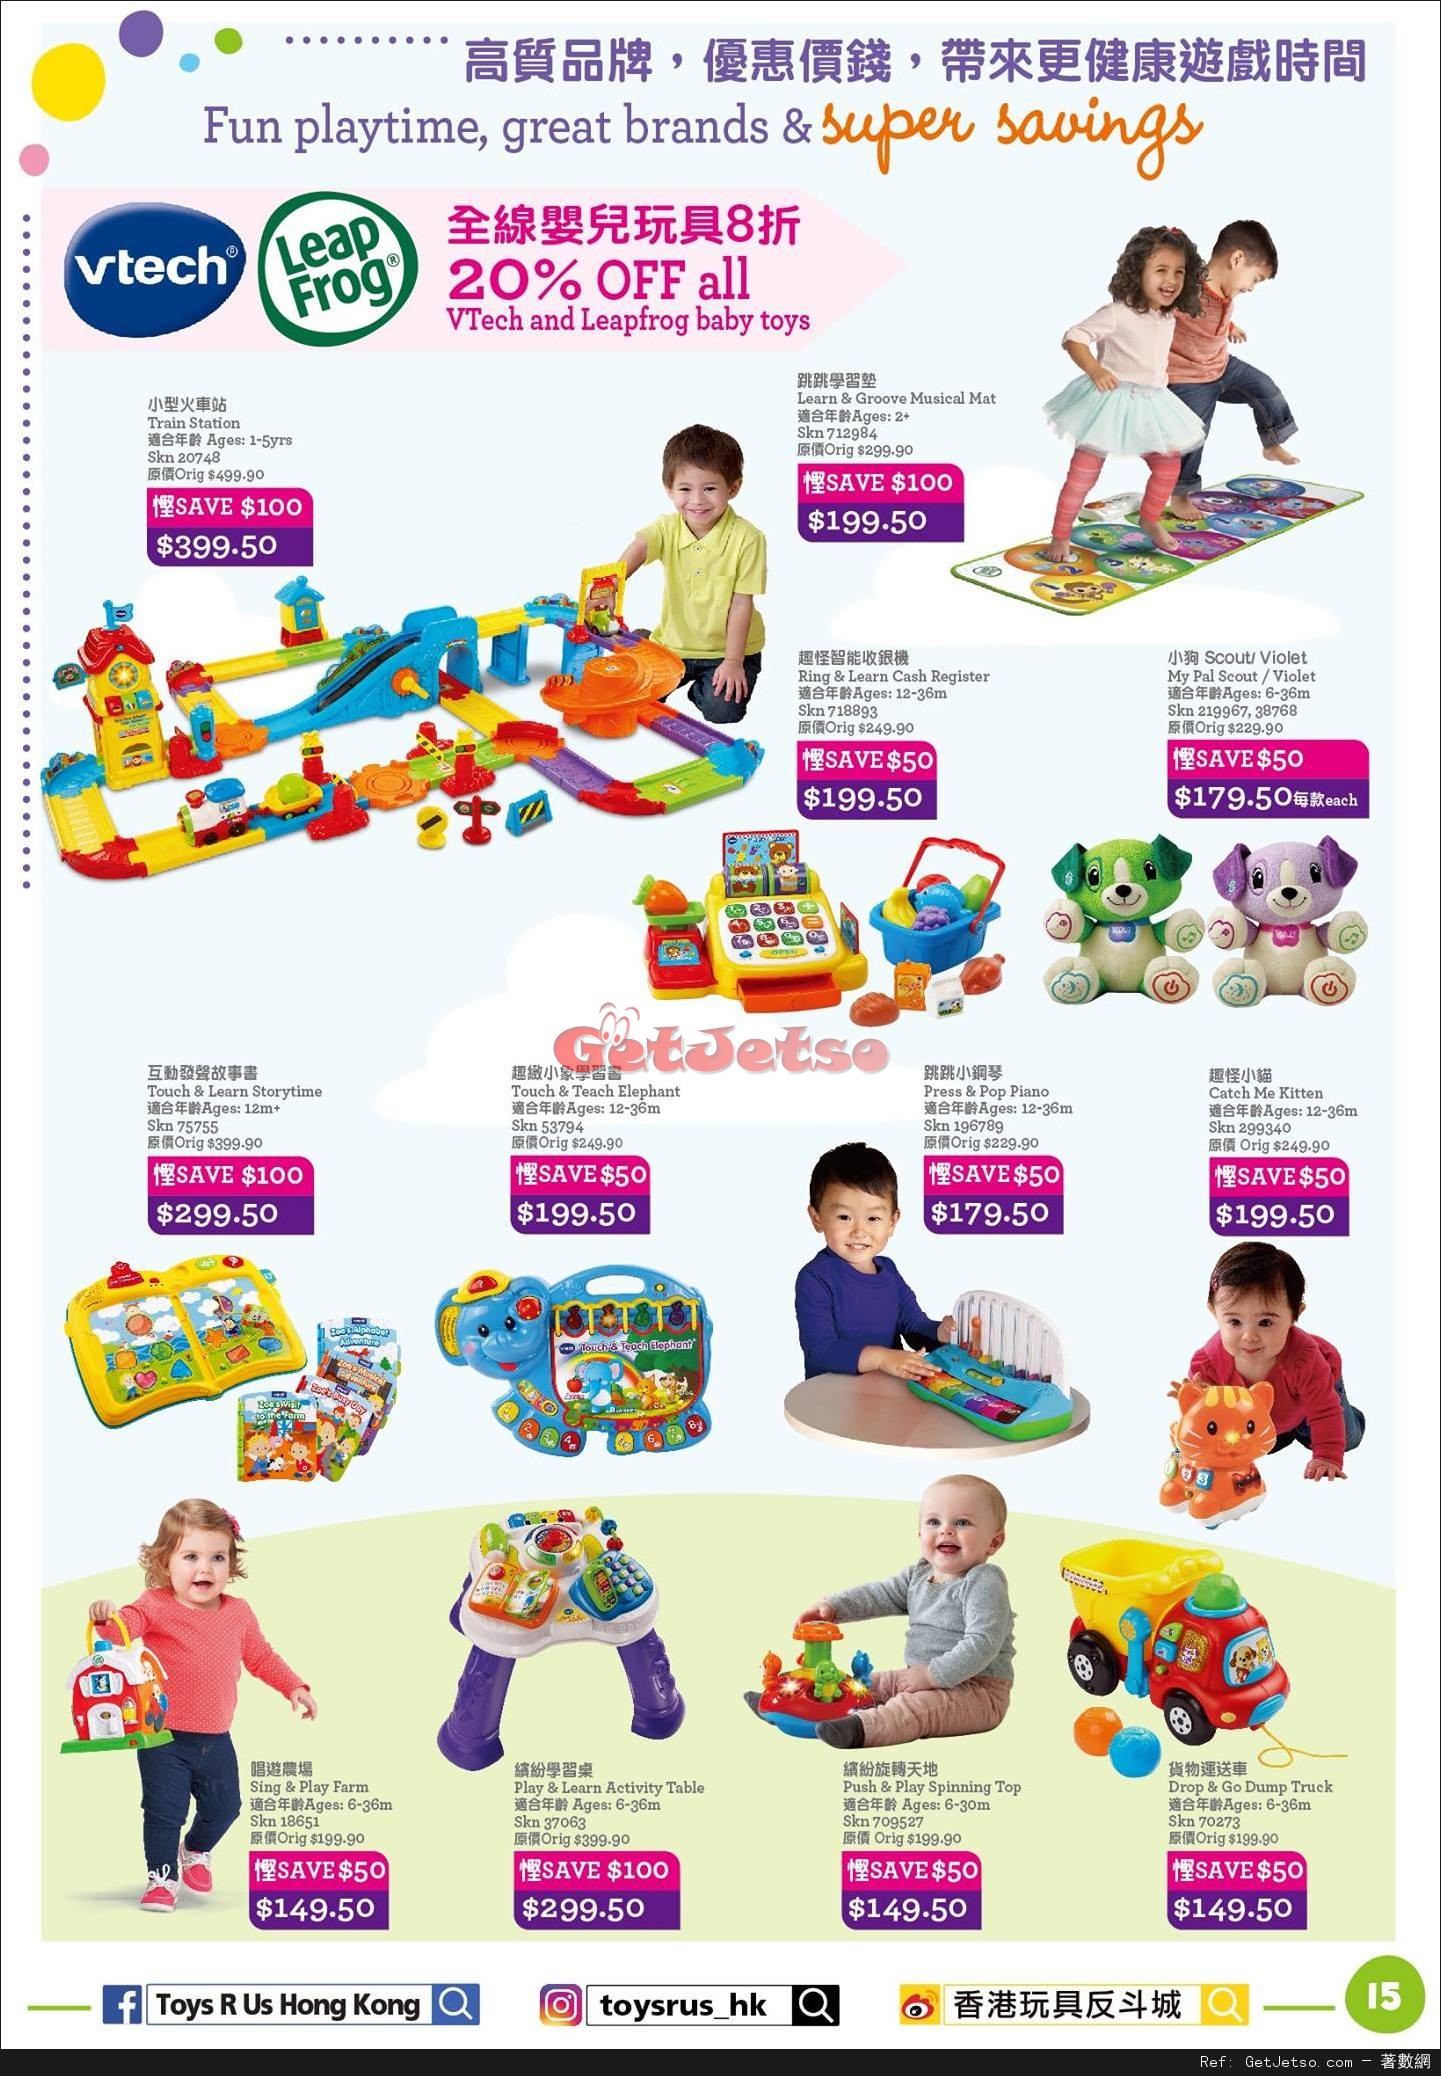 玩具反斗城Toys"R"Us 嬰兒用品低至2折開倉優惠(至17年4月18日)圖片15